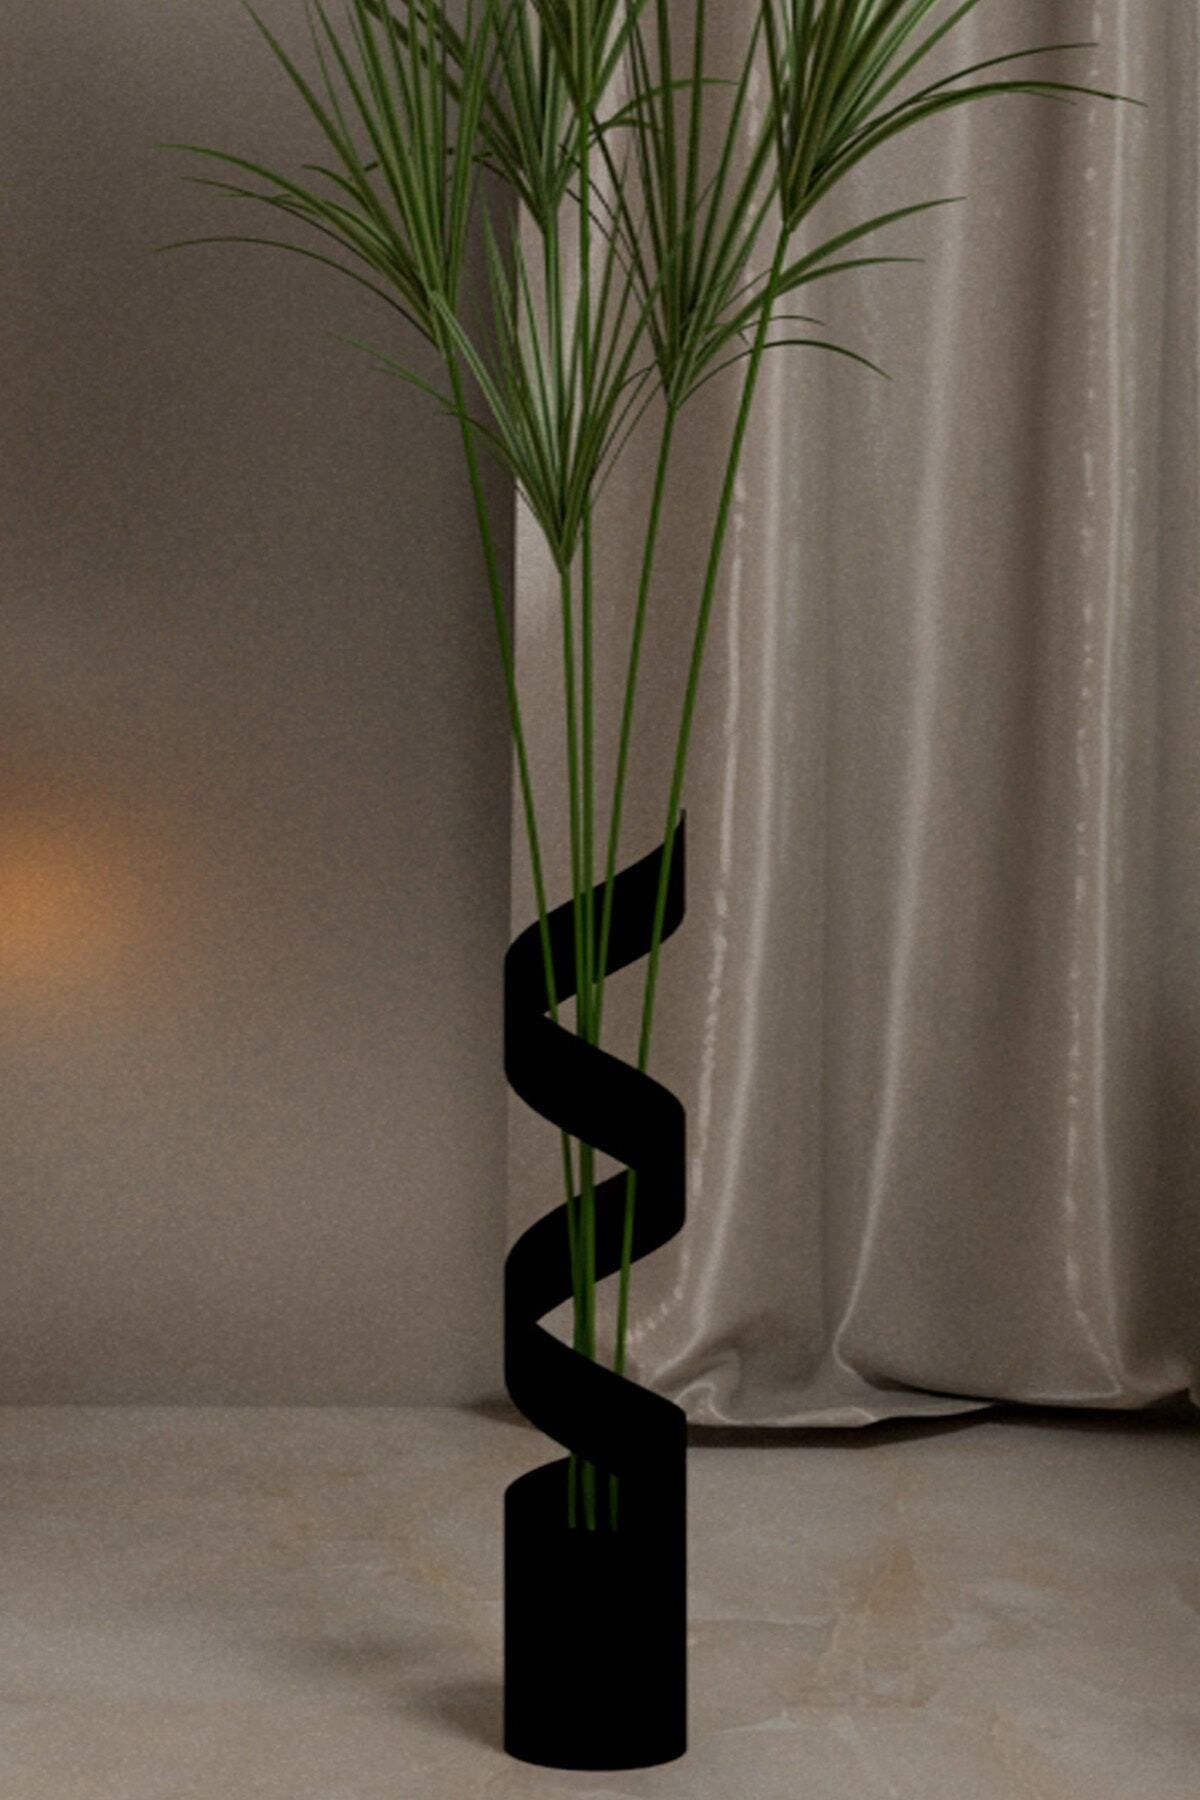 Segi Home Decor Uzun Büyük Metal Vazo Siyah Renk Yükseklik 60 cm Genişlik 11,4 cm Pampas İçin Vazo Çiçek Vazosu